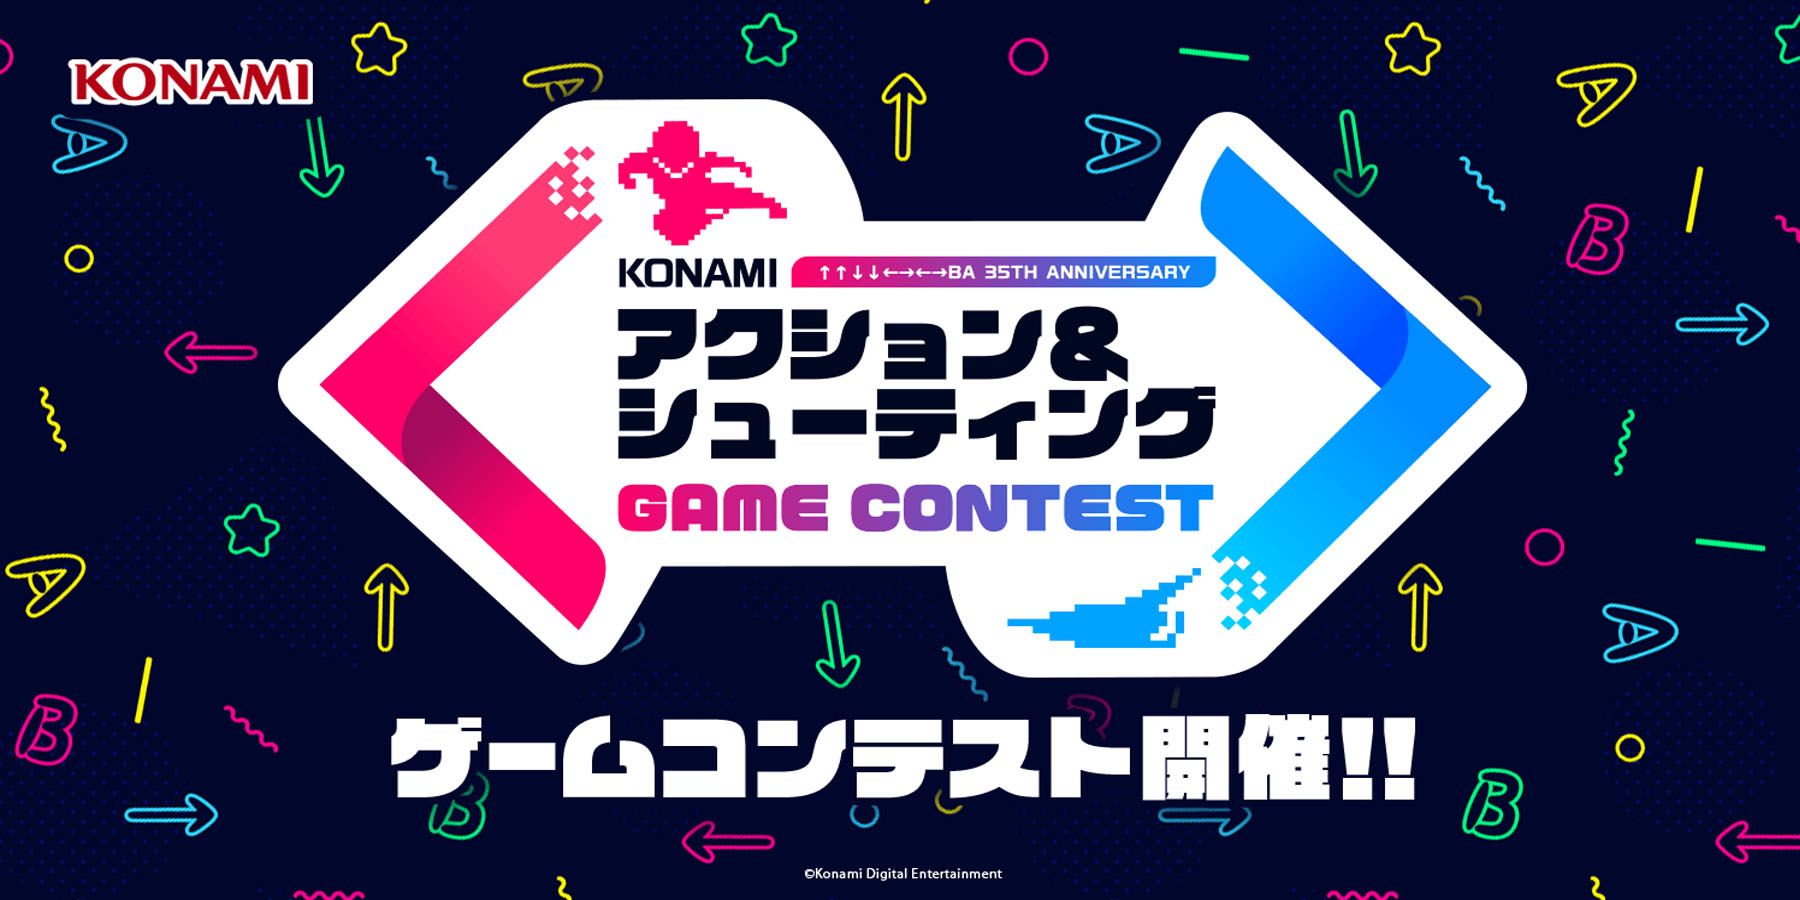 يدعو Konami مطوري Indie إلى إنشاء ألعاب تستند إلى الامتيازات الكلاسيكية